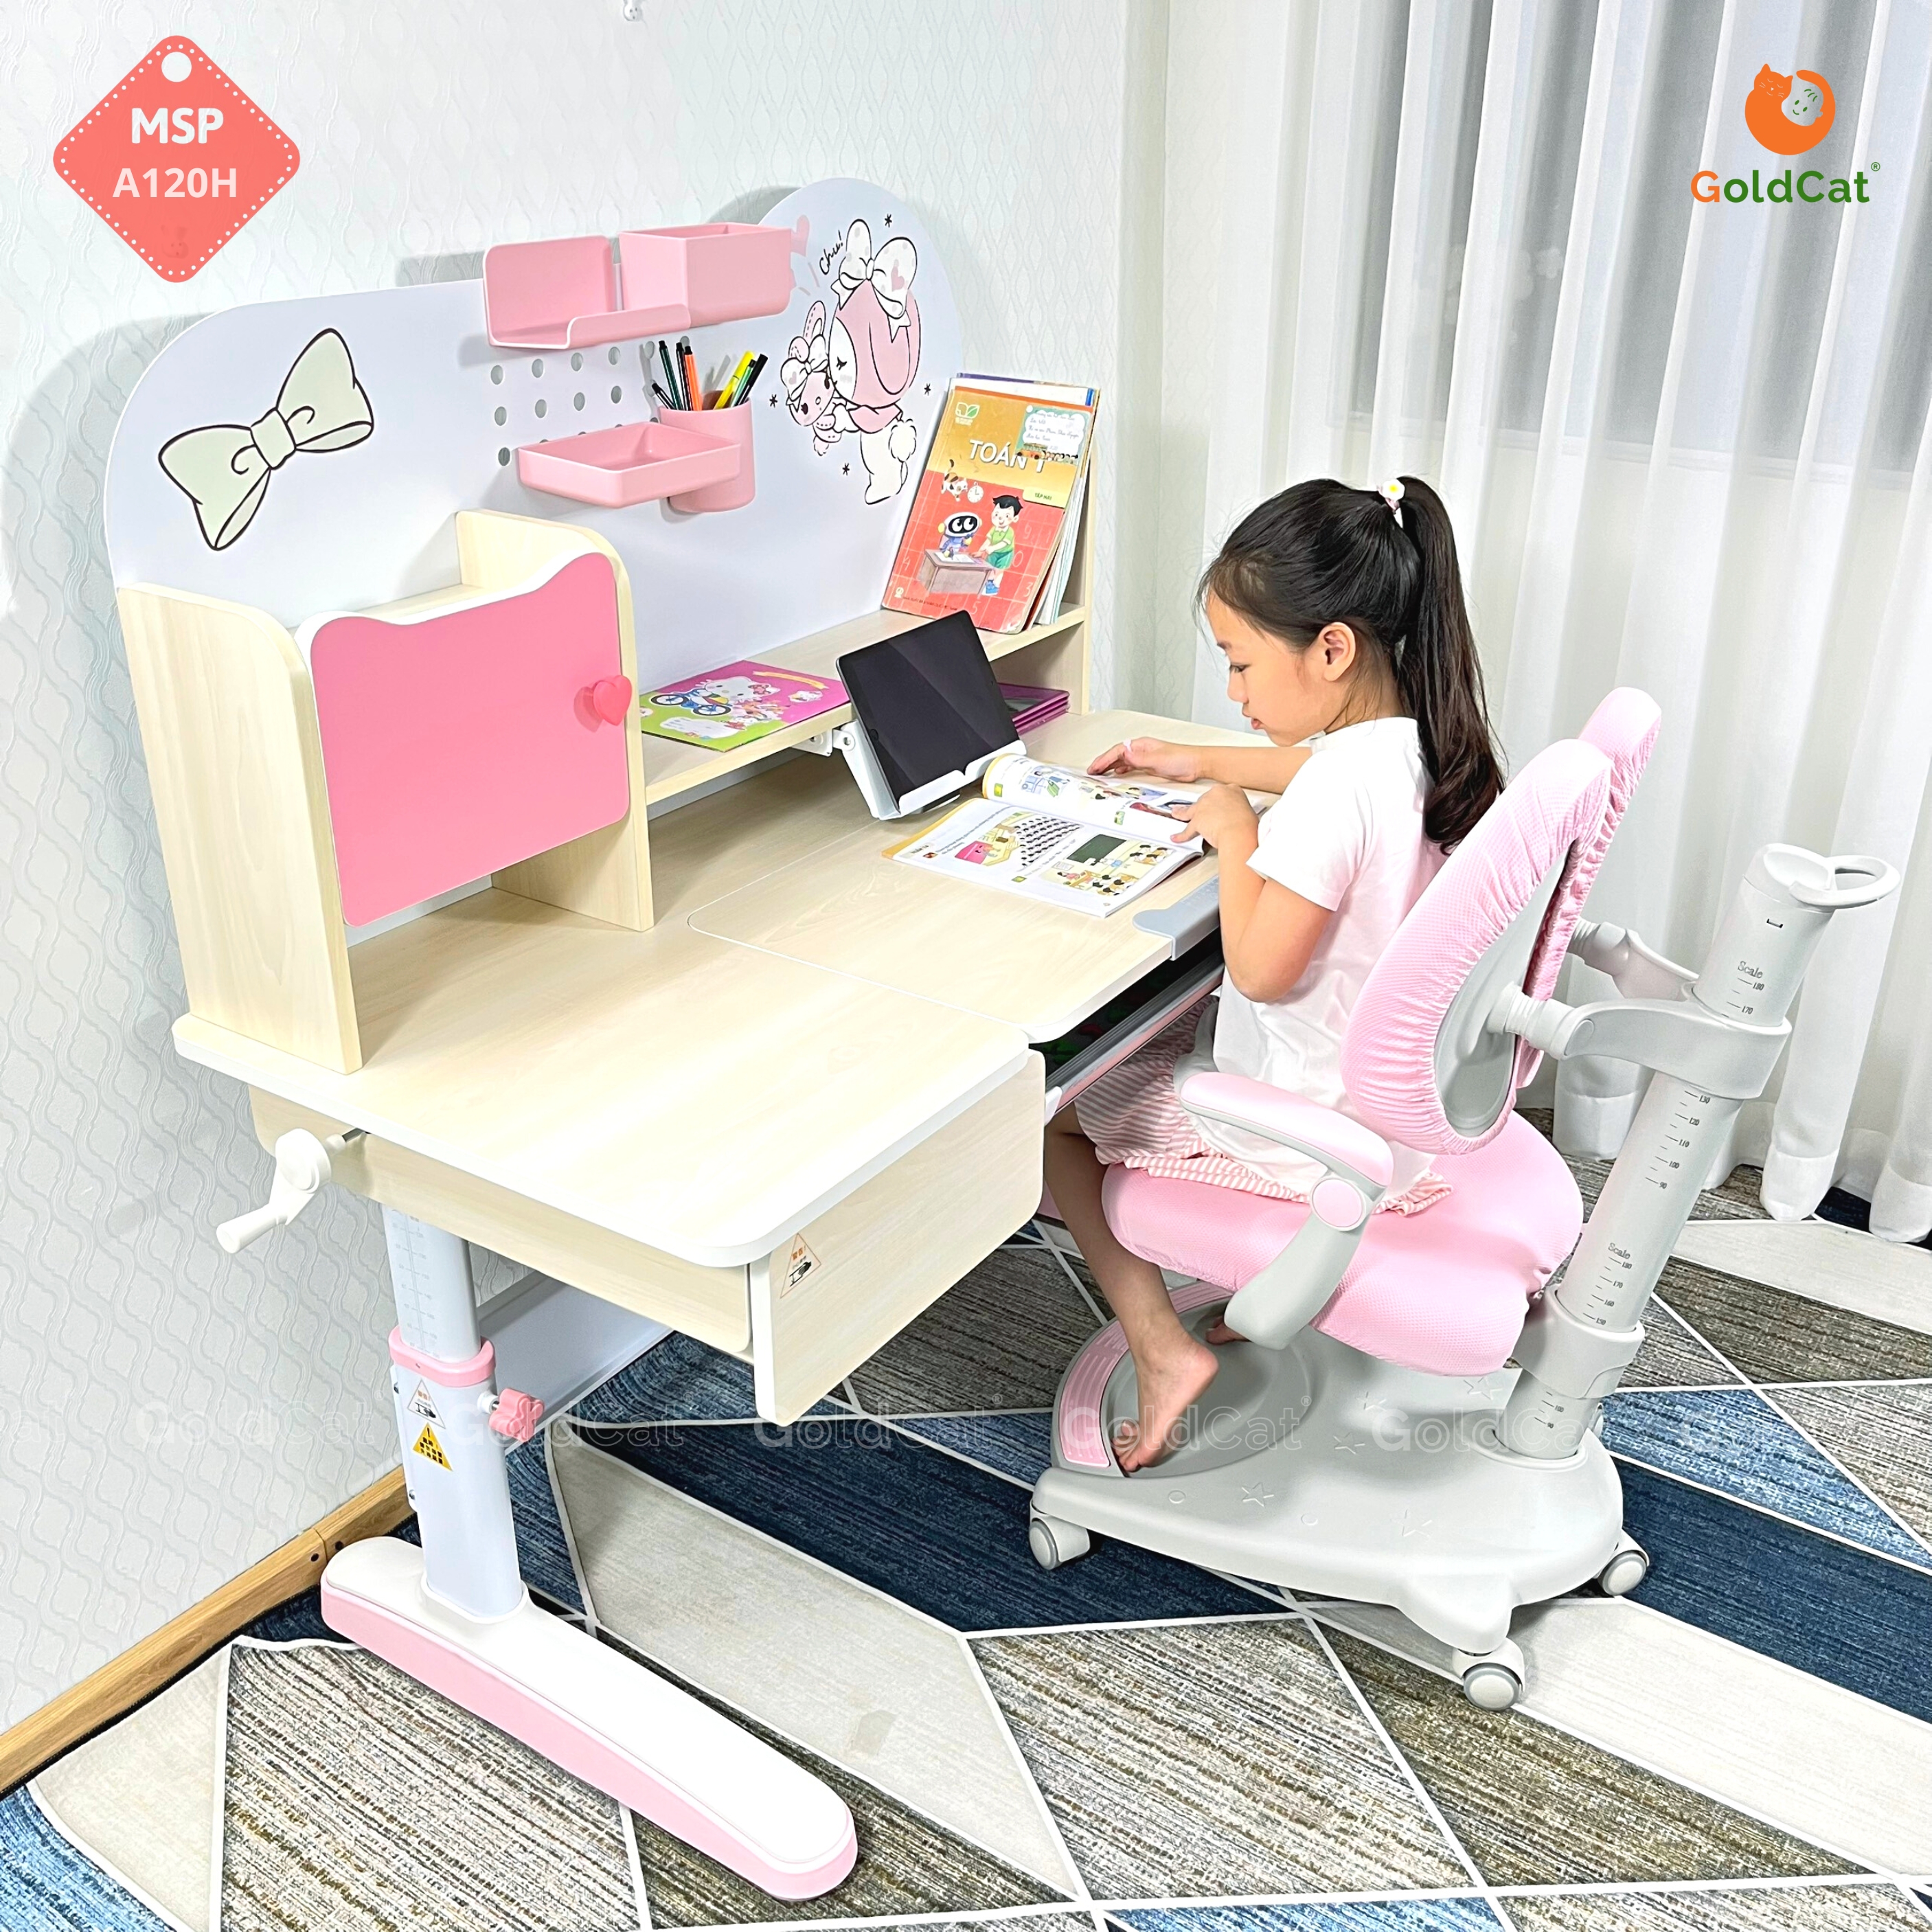 Măt bàn A120 full size tạo không gian rộng rãi với nhiều tiện ích hỗ trợ bé trong quá trình học tập